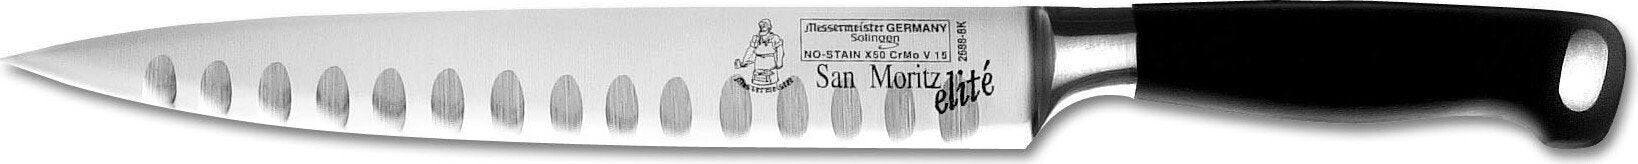 Messermeister - San Moritz Elite 8" Kullenschliff Carving Knife - E/2688-8K